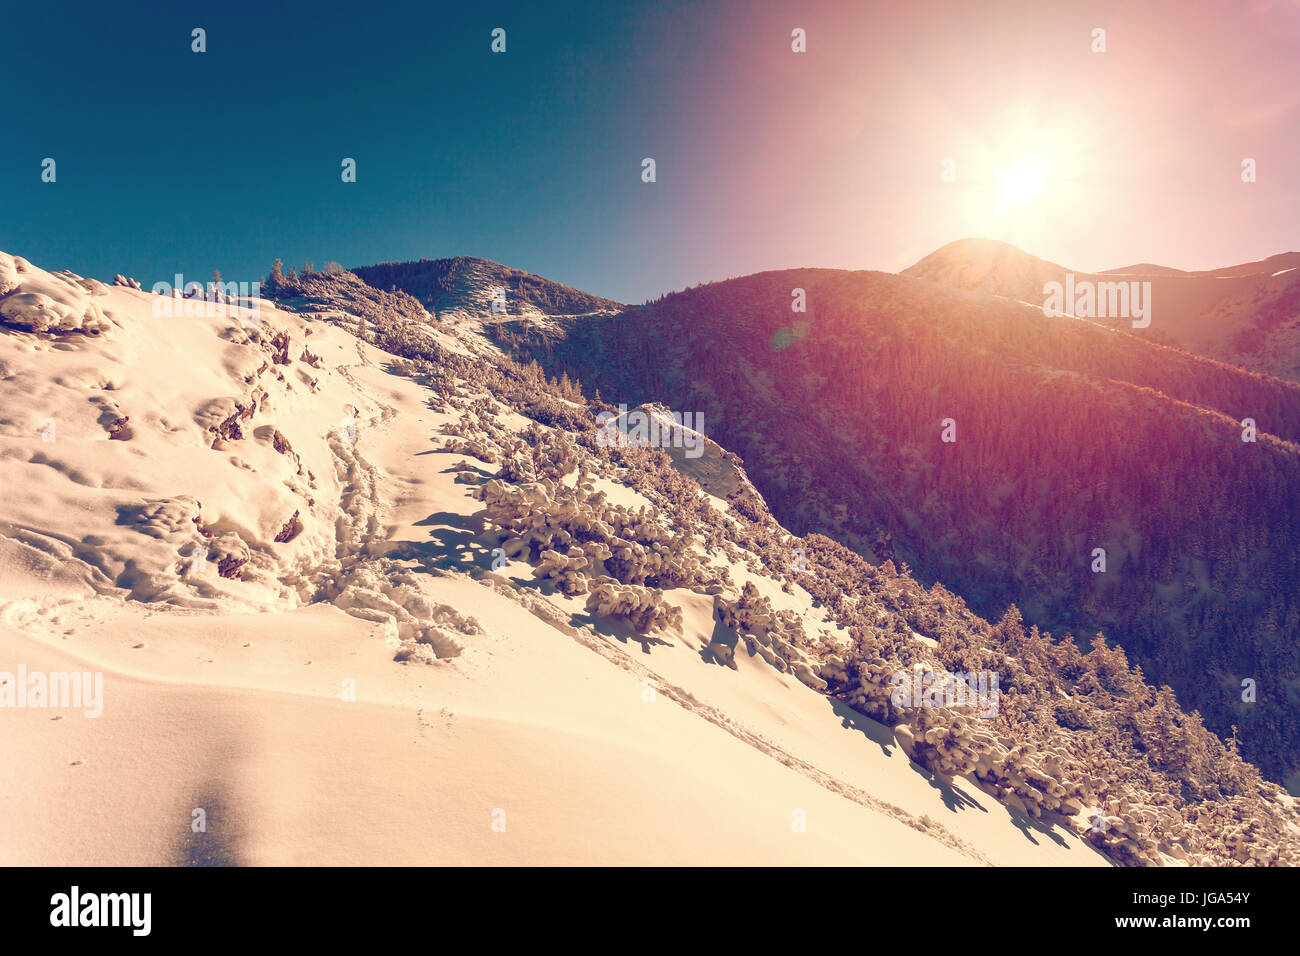 Paesaggio invernale con regolazione del sole Foto Stock